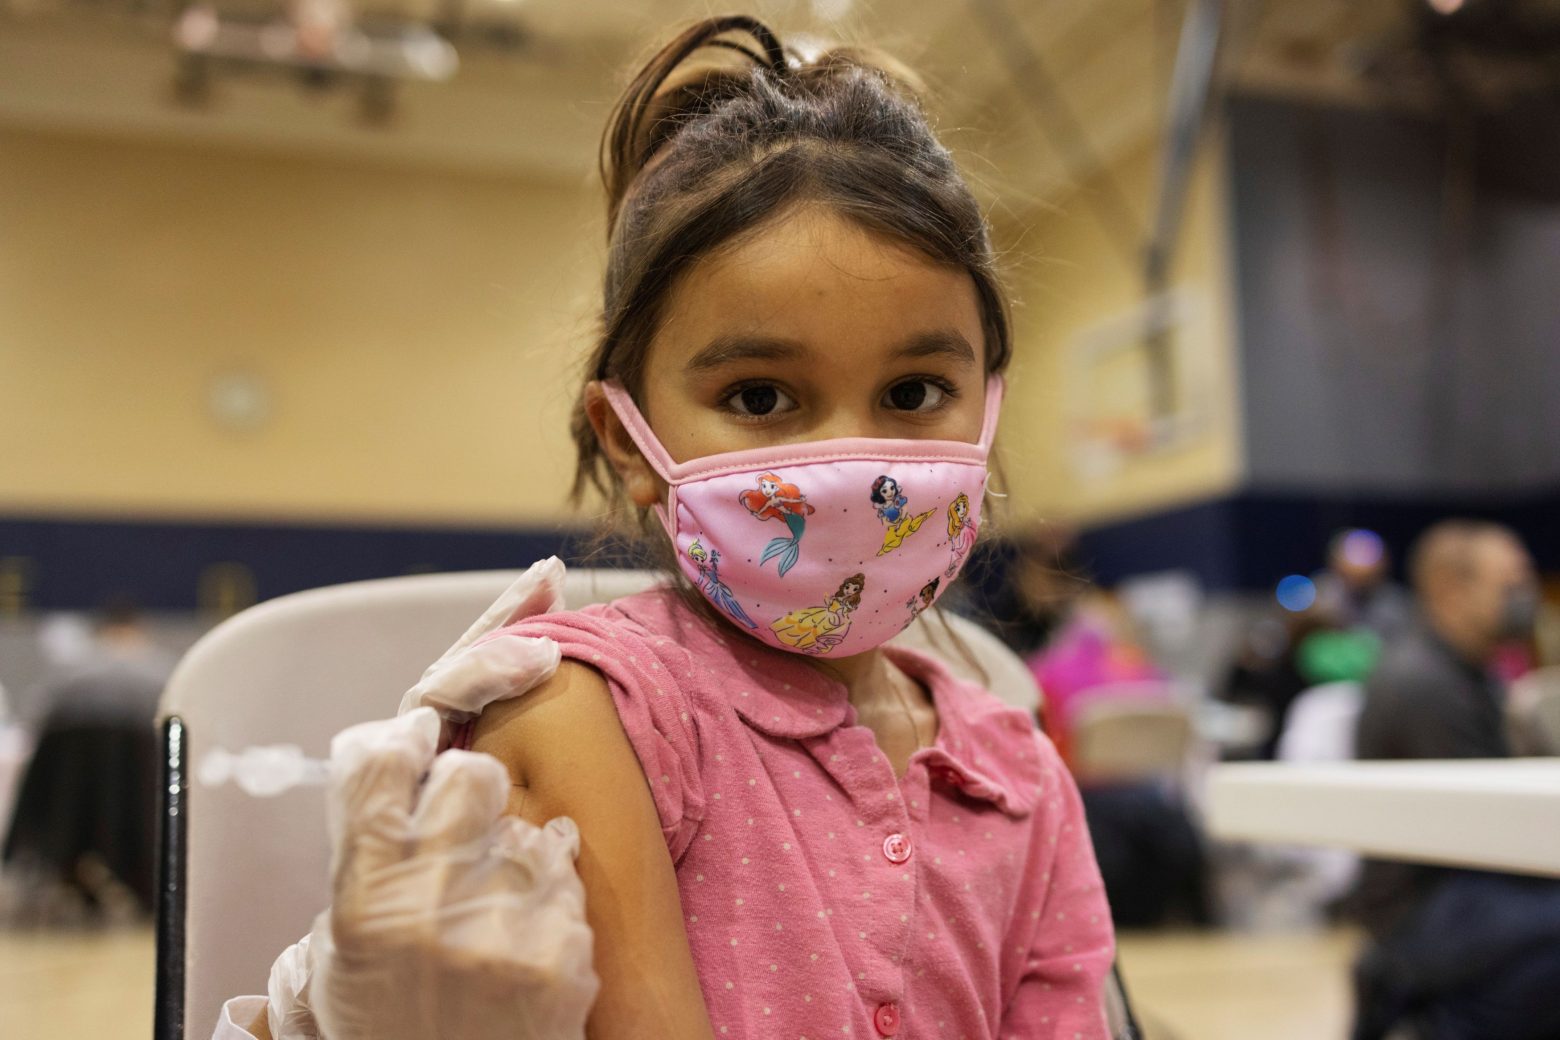 Σουηδία - Εγκρίθηκε από την υπηρεσία Δημόσιας Υγείας ο εμβολιασμός κάποιων παιδιών ηλικίας 5 με 11 ετών